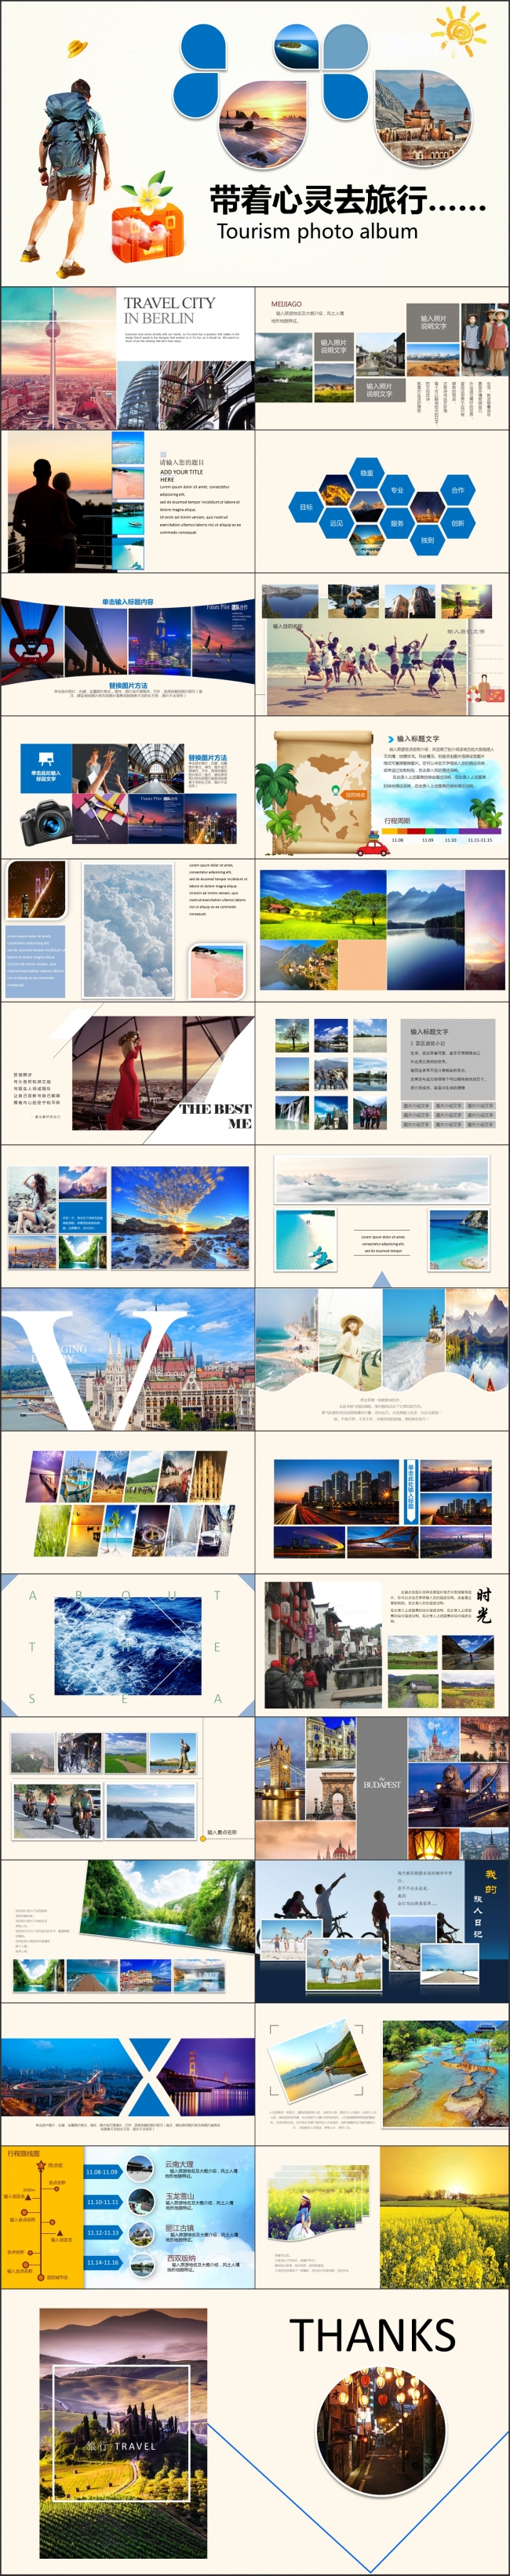 旅游画册图片相册活动展示PPT模板